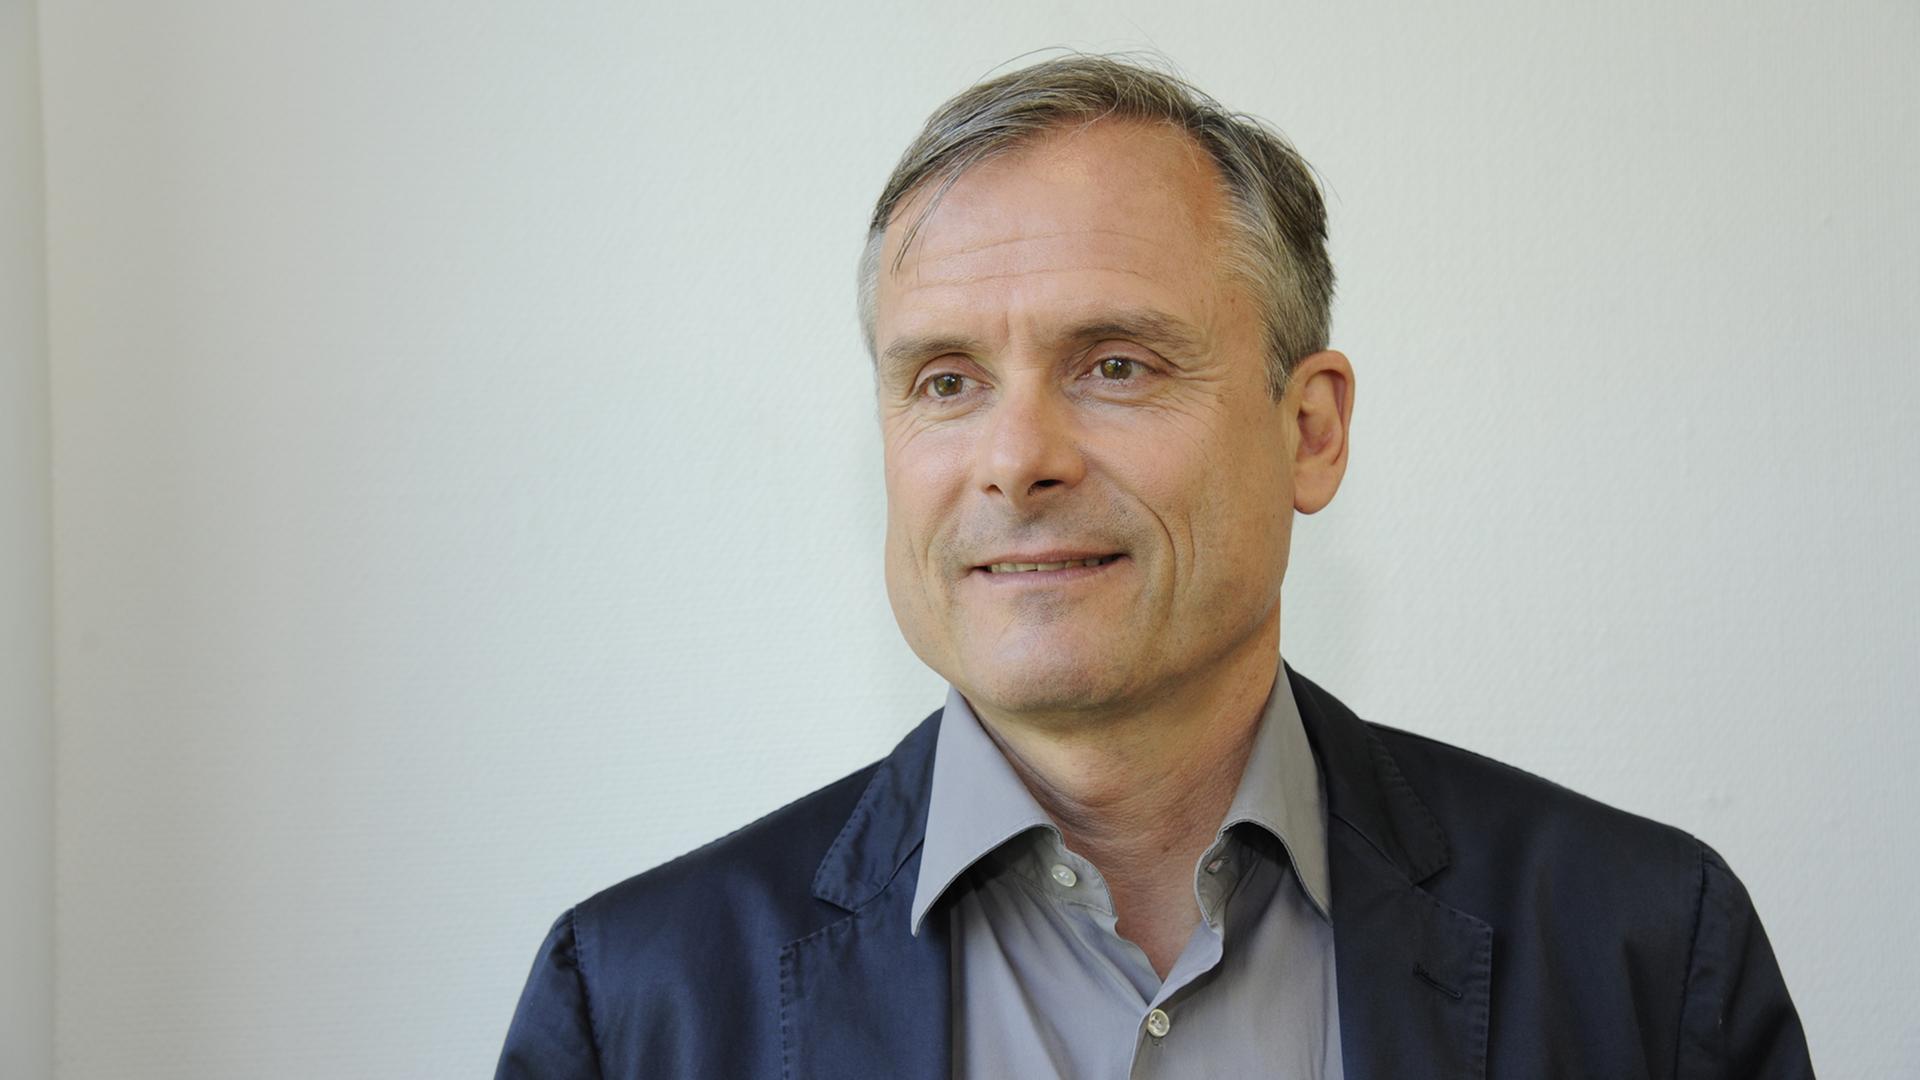 Der Autor und Kolumnist Axel Hacke, aufgenommen am 01.06.2014 in Köln.